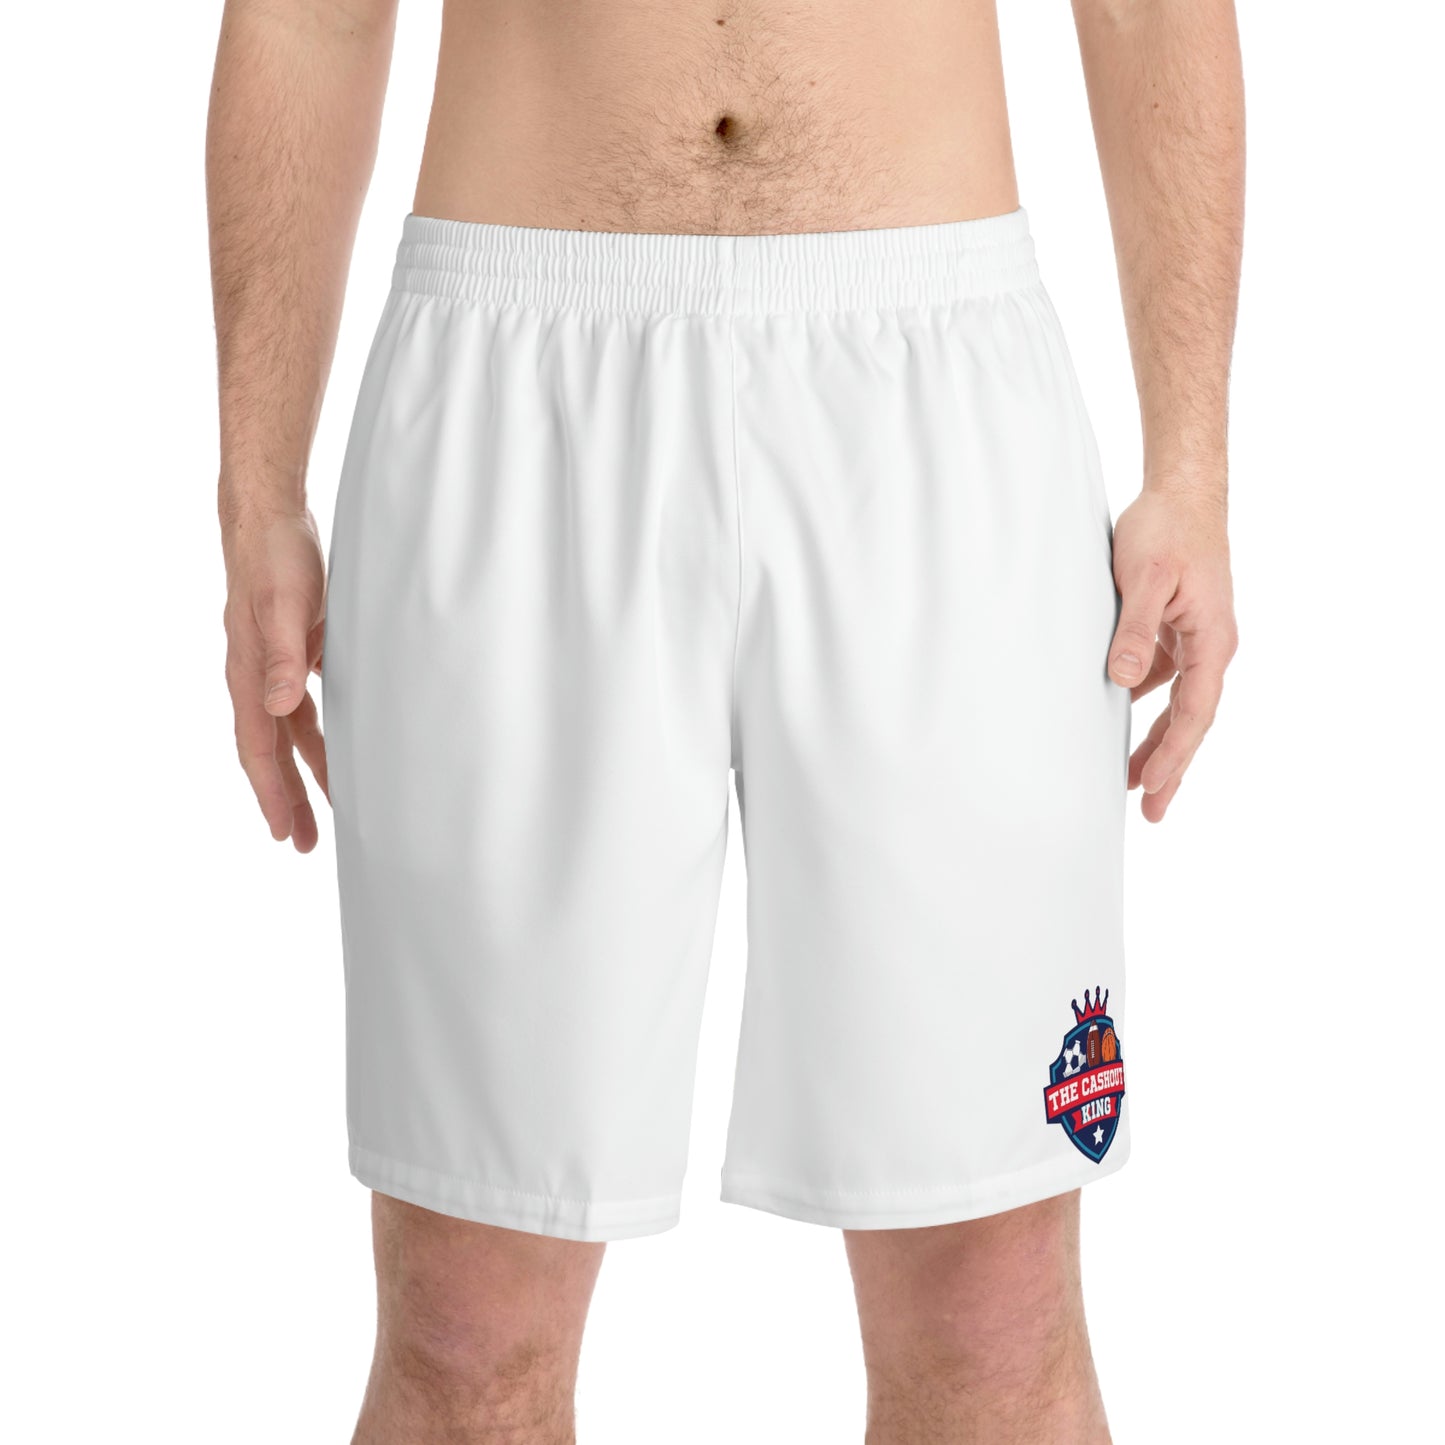 White Men's Elastic Beach Shorts